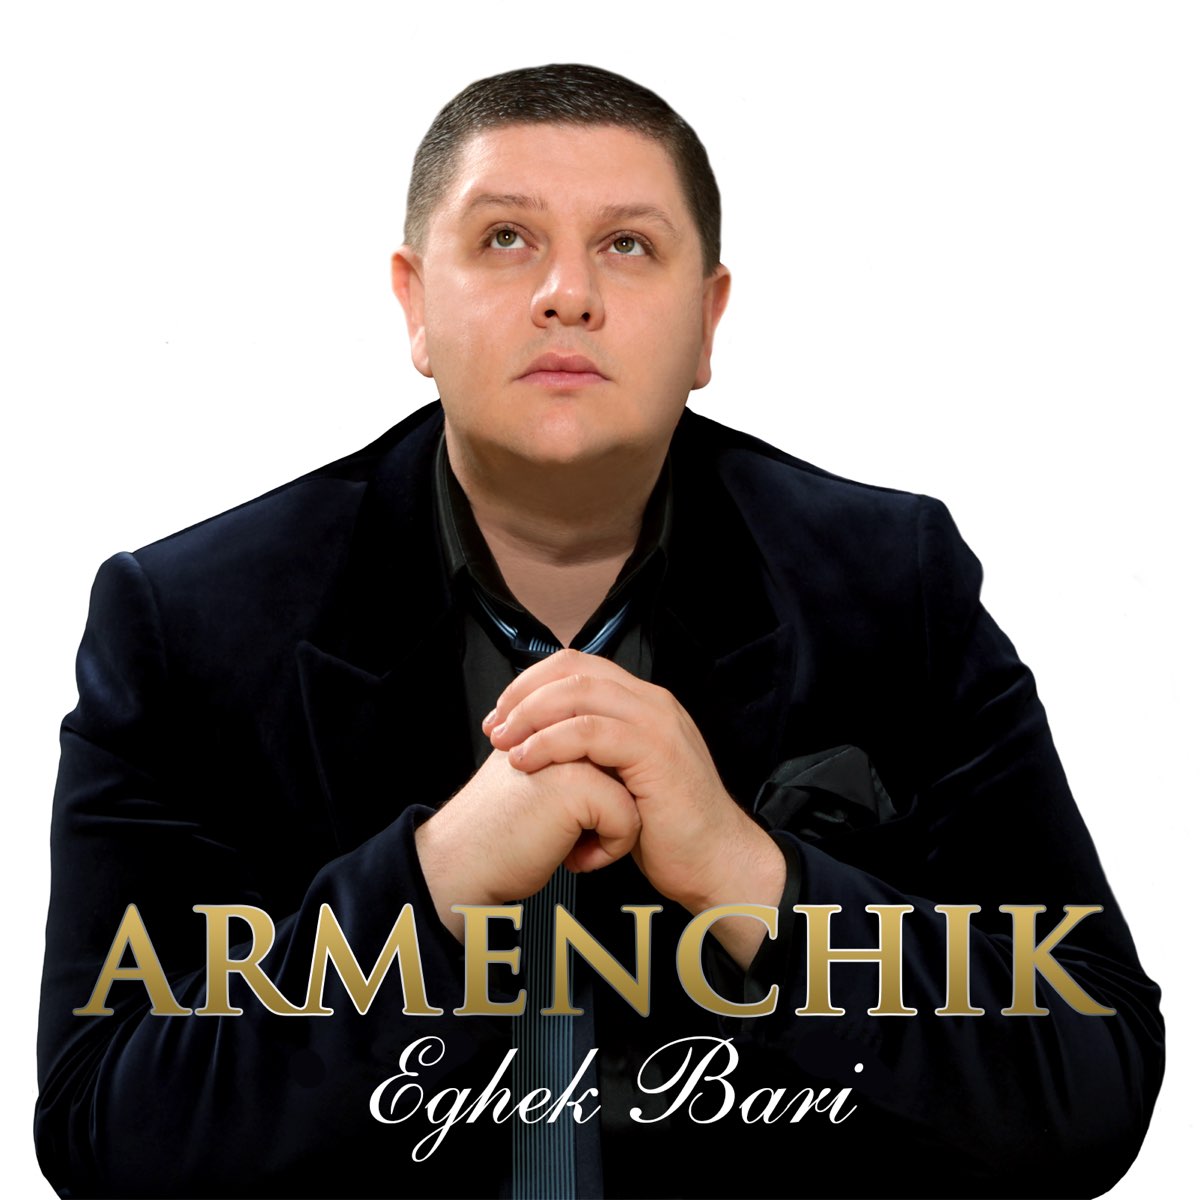 Eghek Bari - Single", Armenchik.